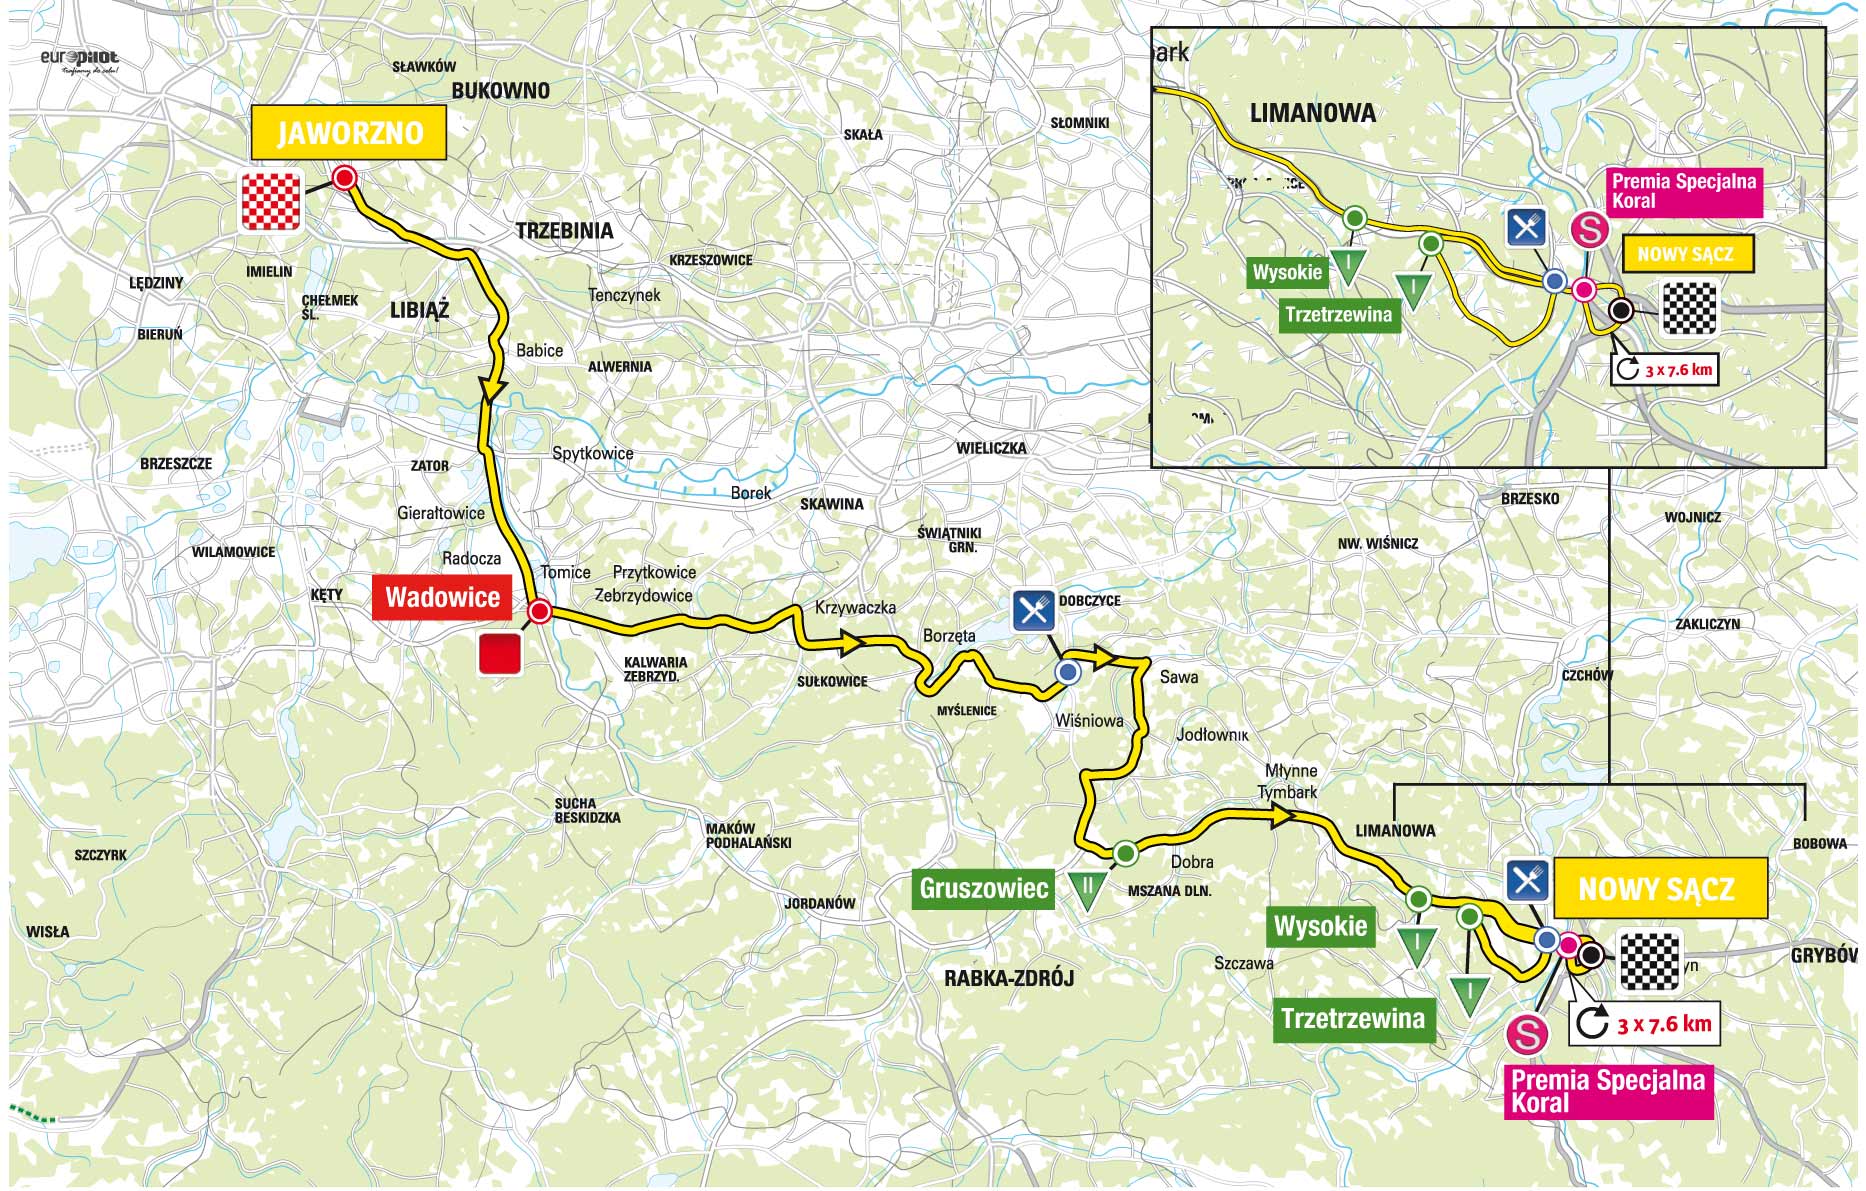 Streckenverlauf Tour de Pologne 2015 - Etappe 4